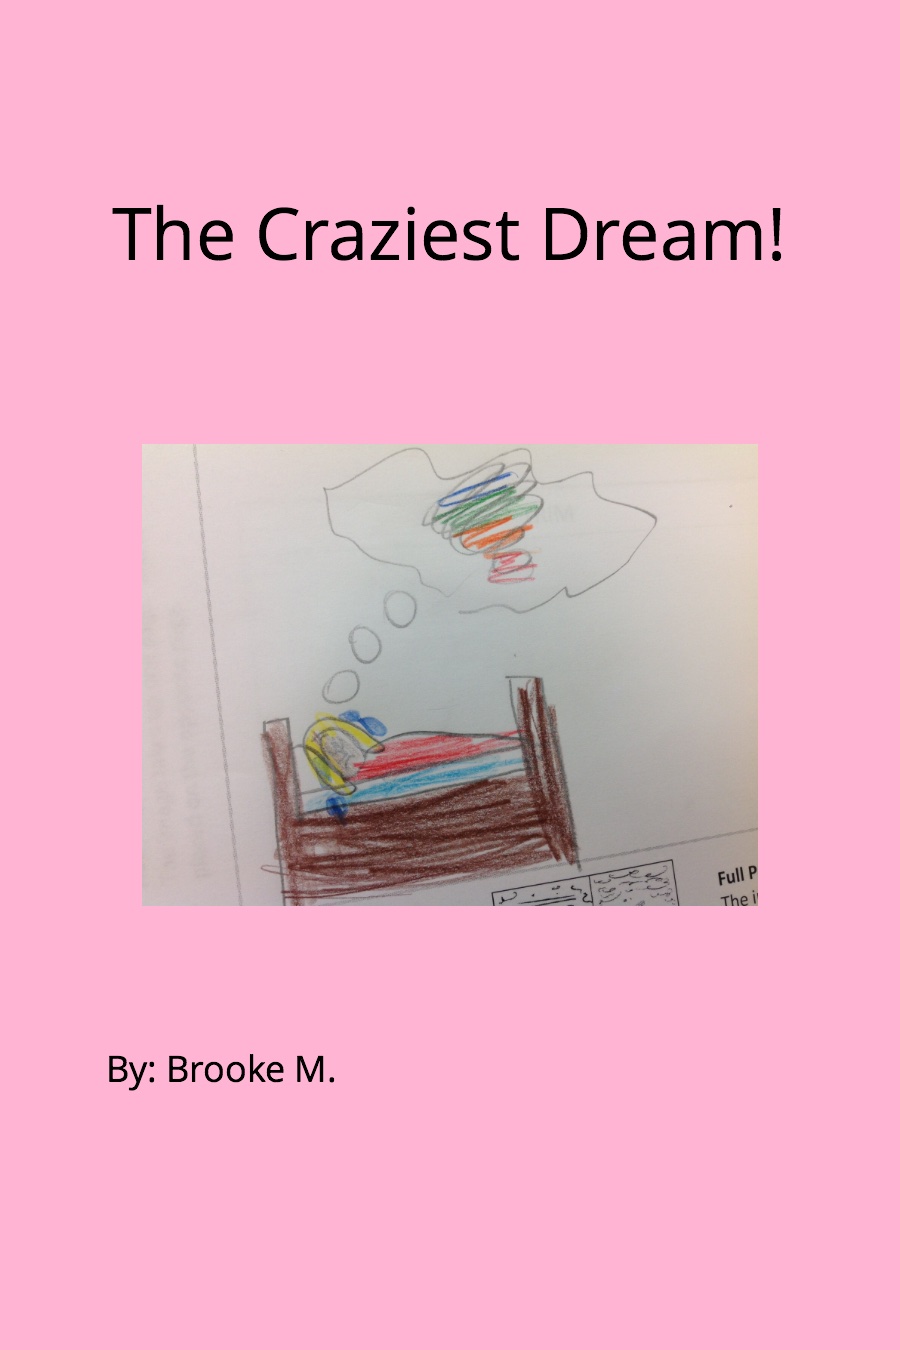 The Craziest Dream by Brooke M